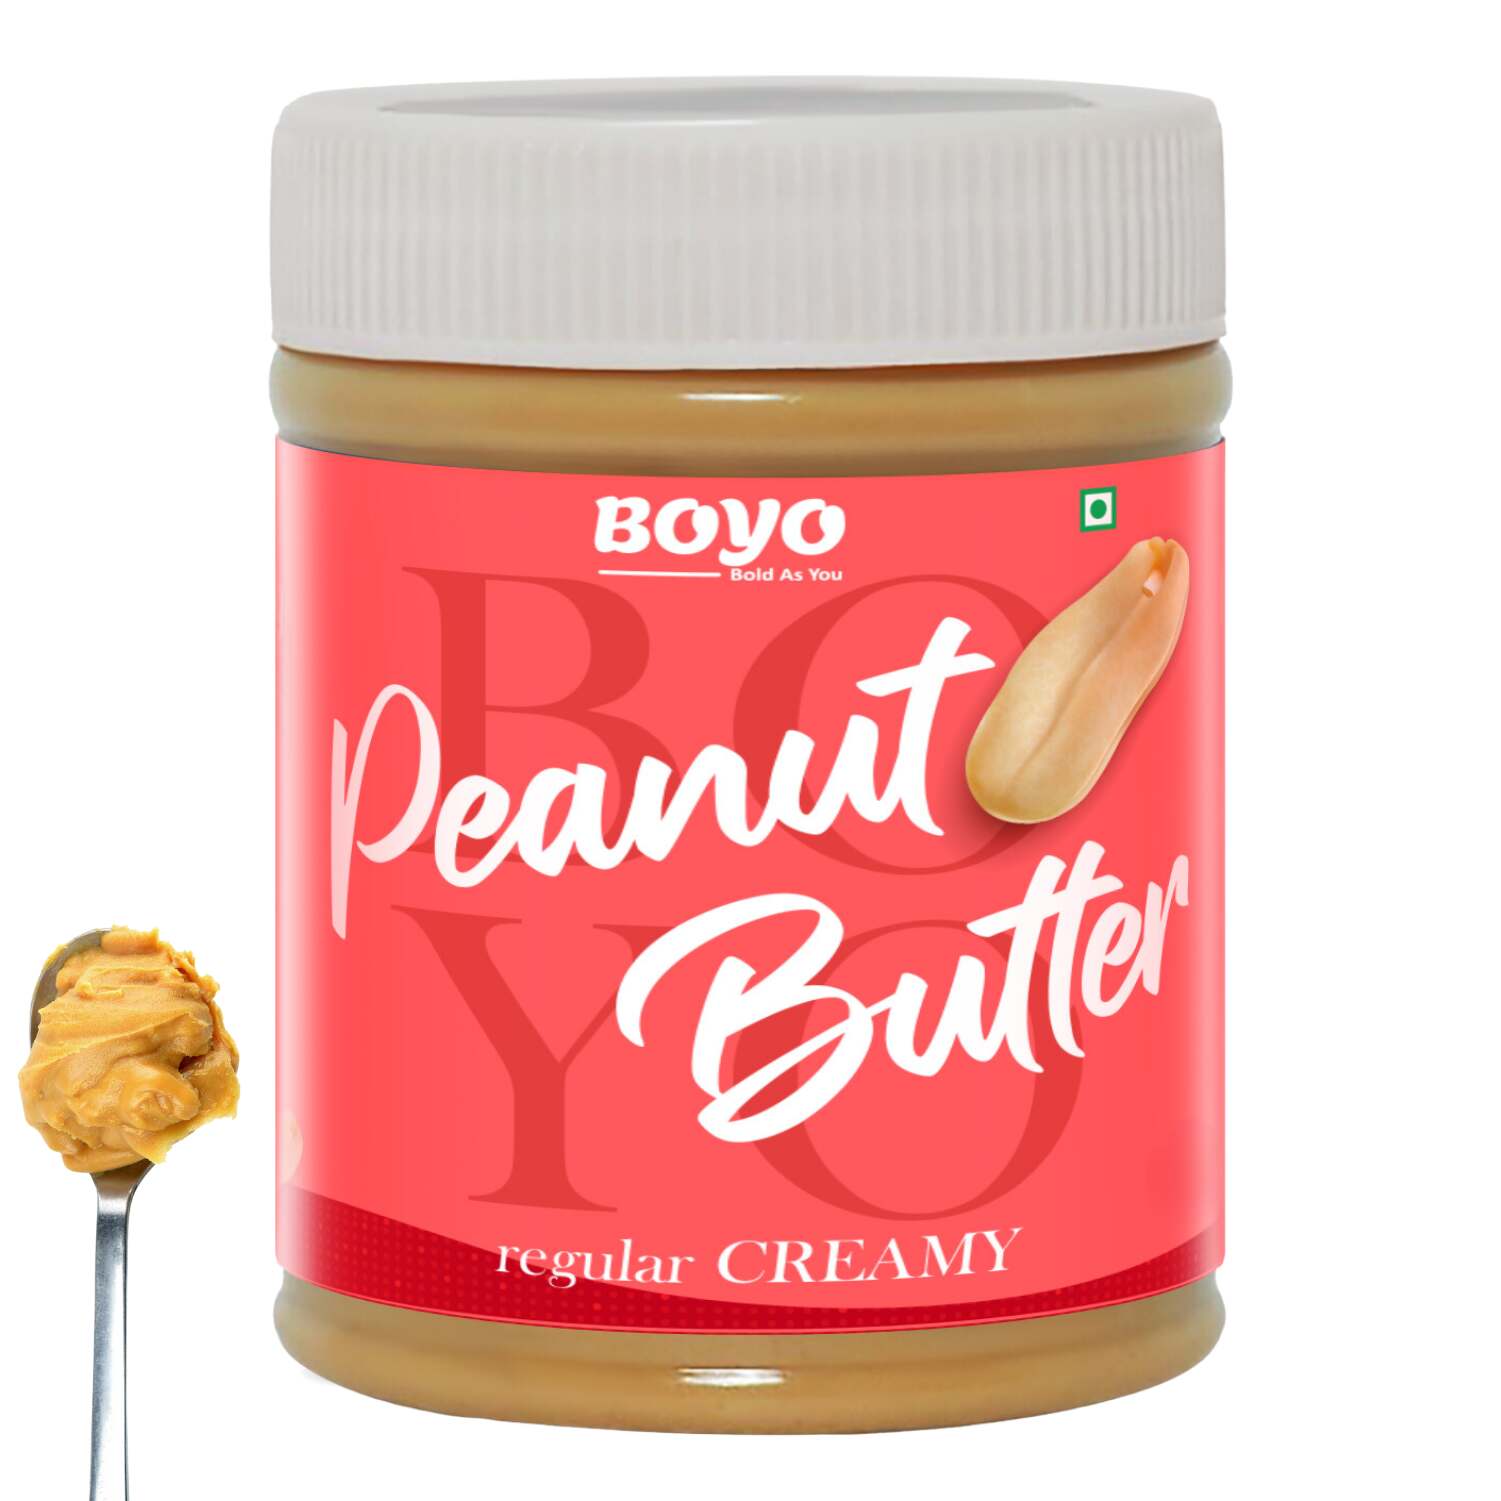 Peanut Butter Regular Creamy flavor - 510gm